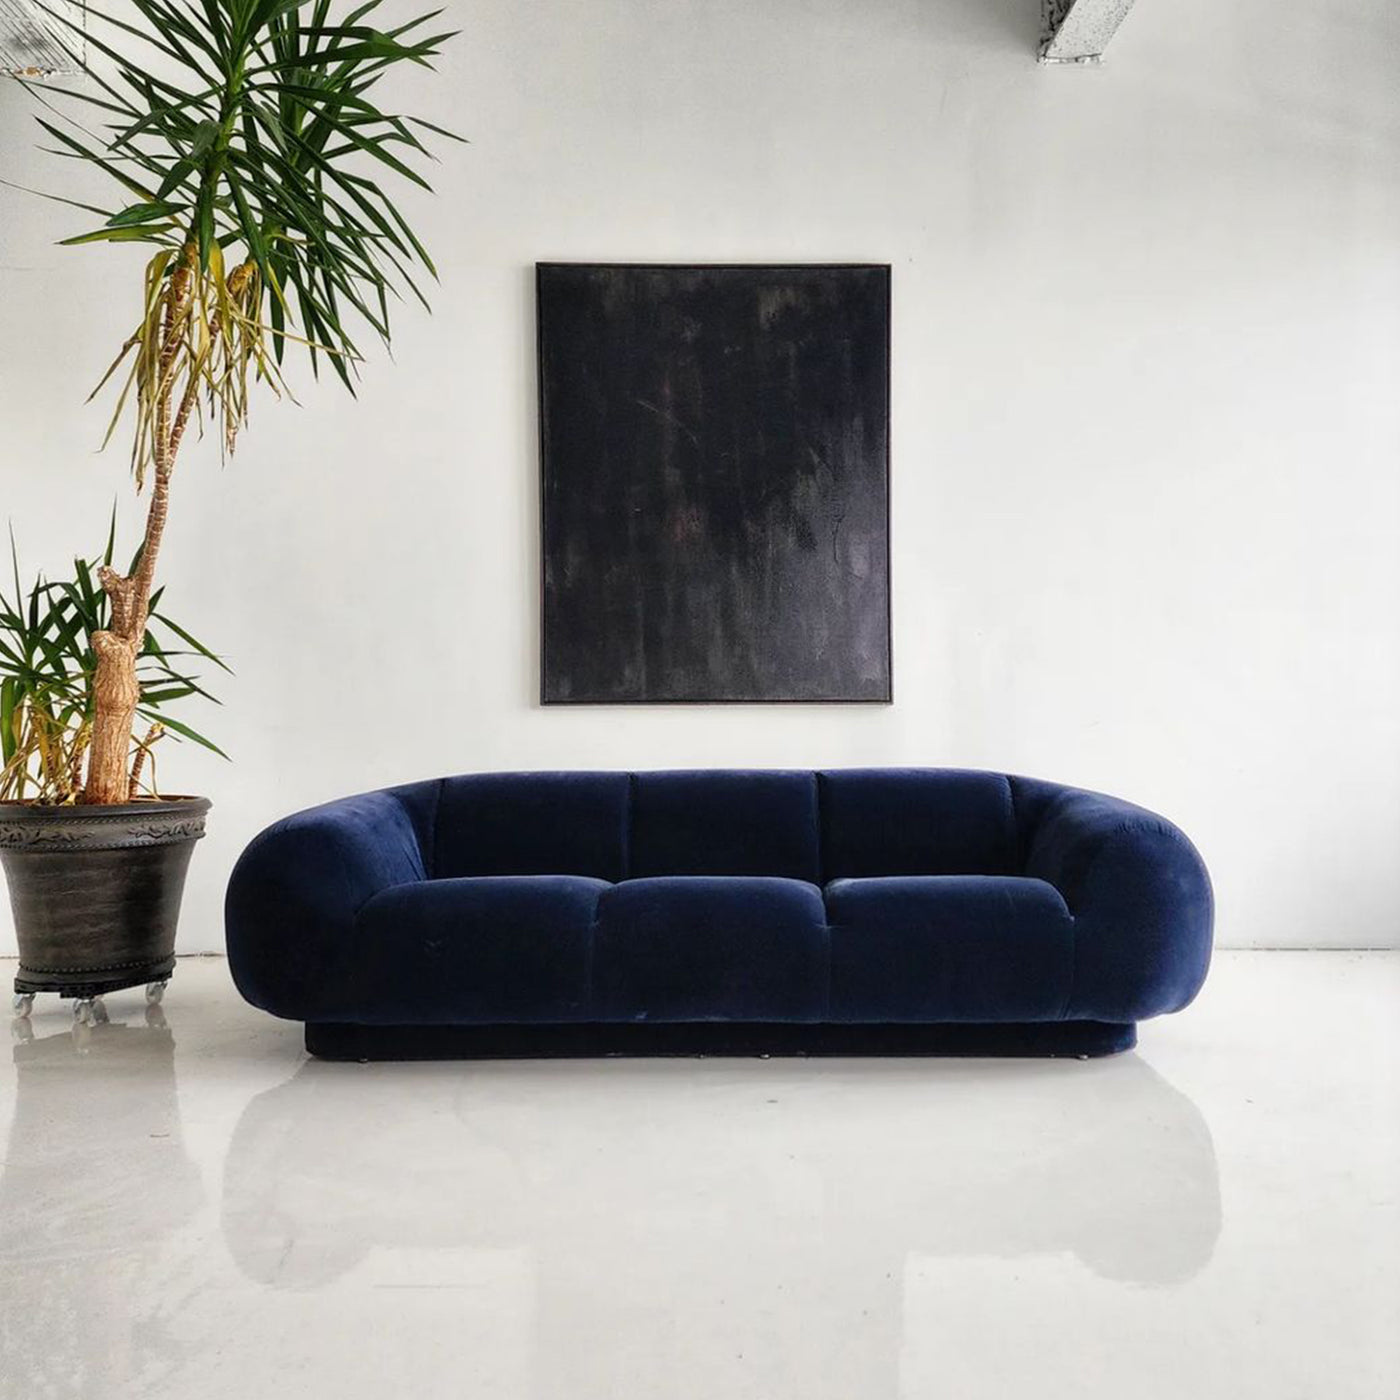 Amphibious Sofa by Steven Chase